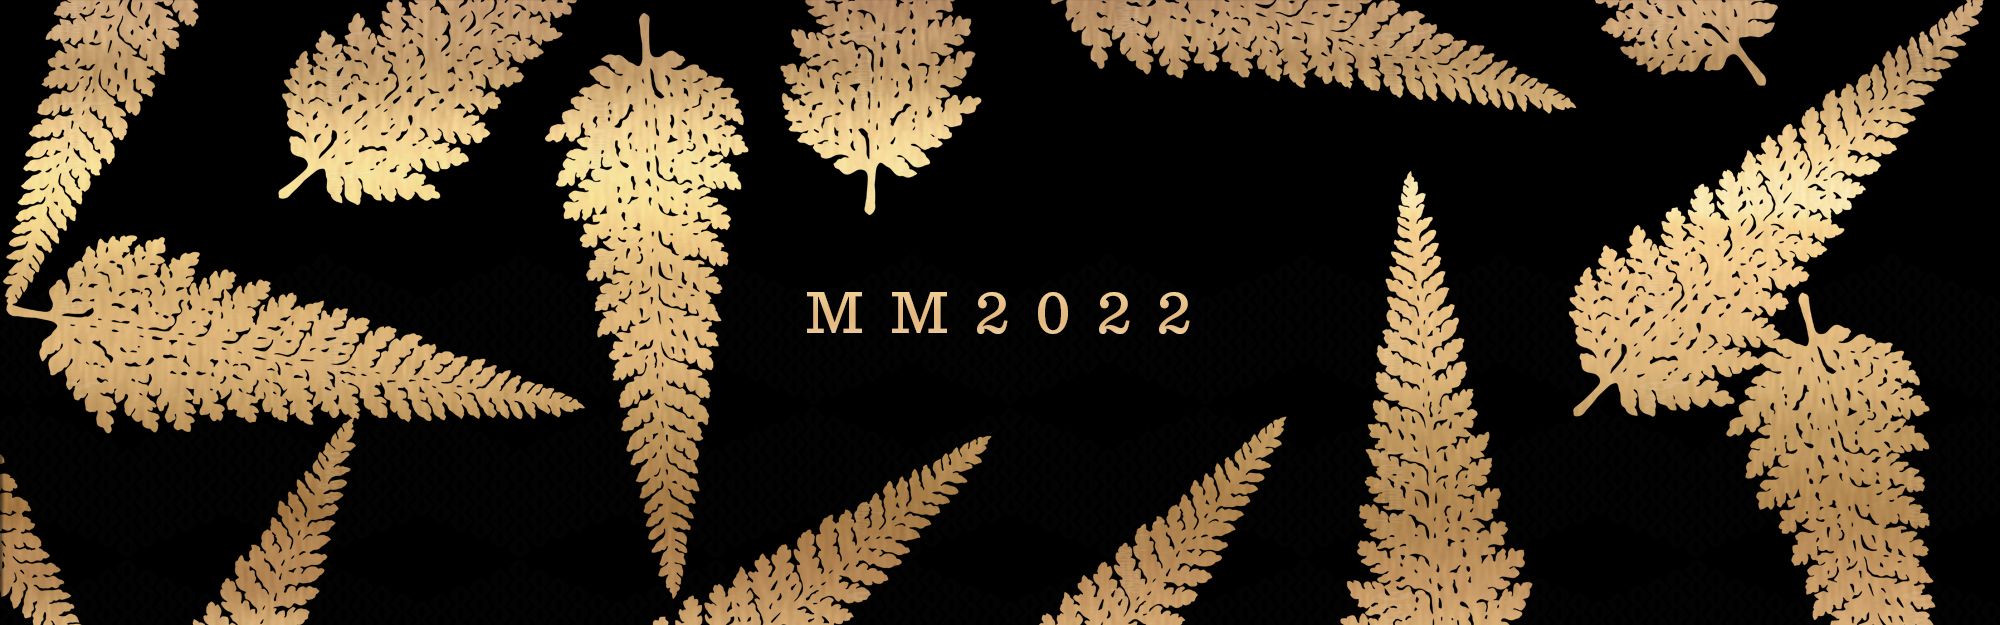 Mele Manaka 2022 Patterns